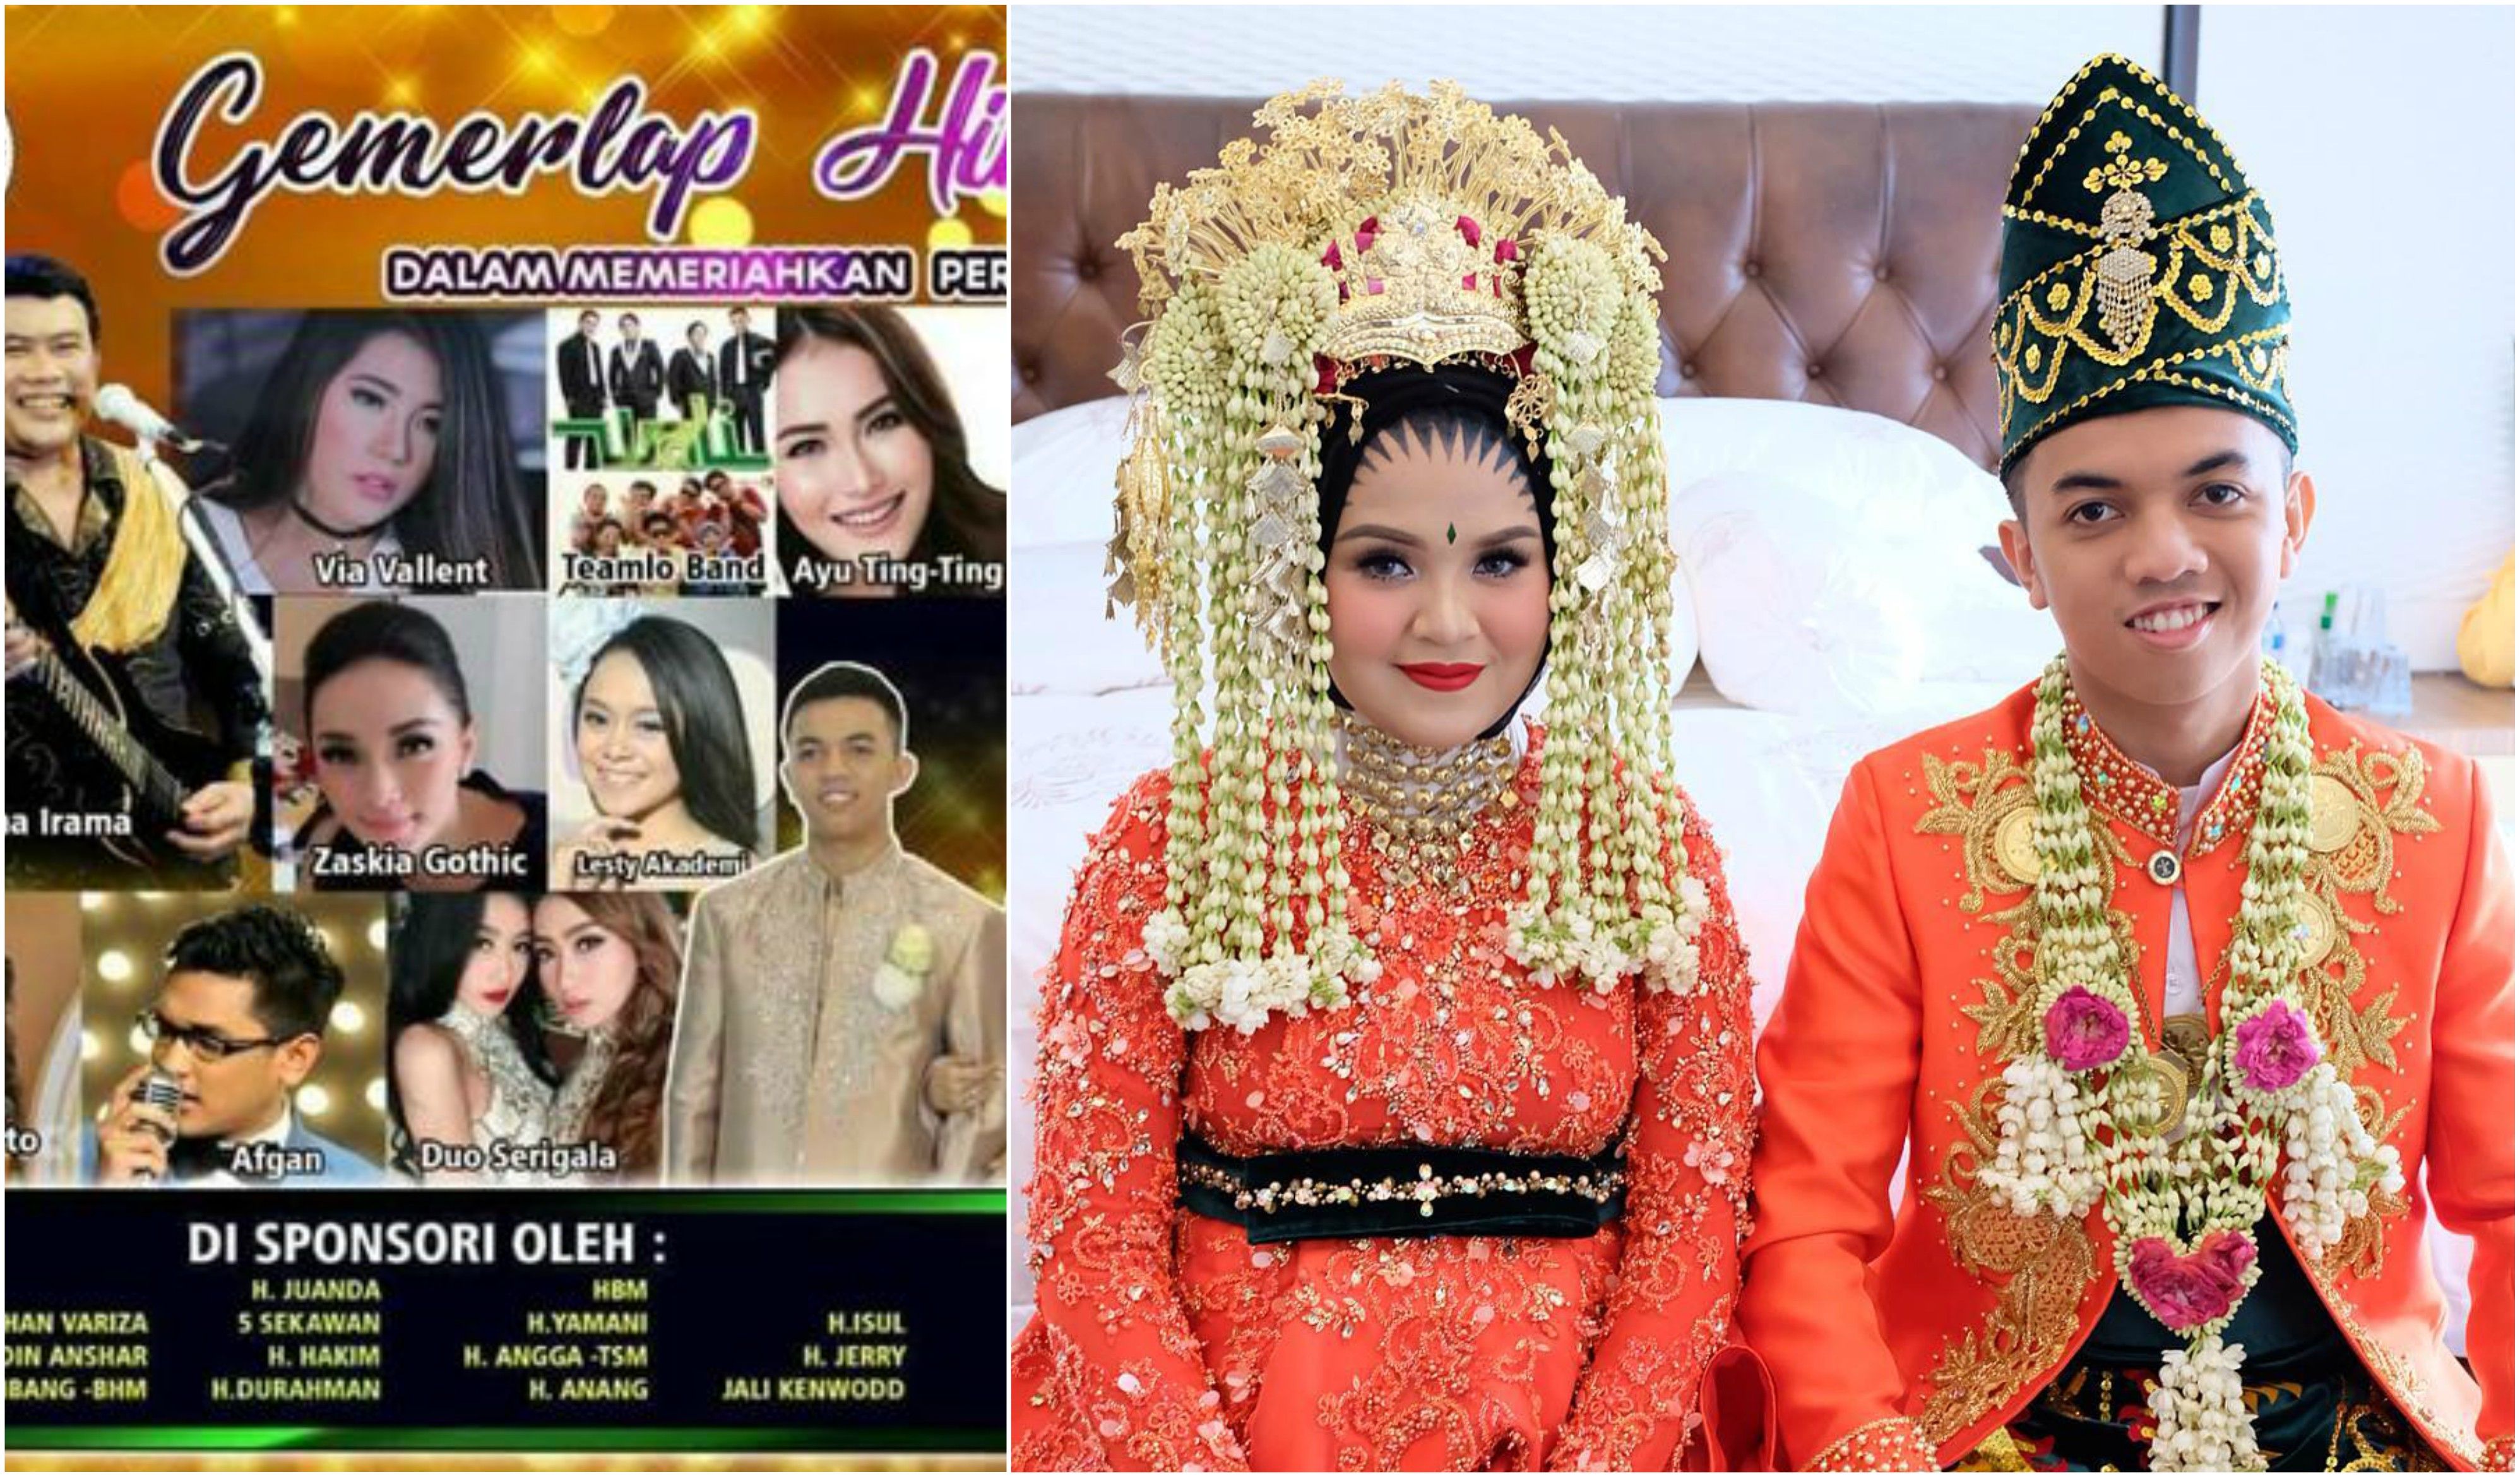 Pesta Pernikahan Rp 12 Miliar Di Indonesia. Ini Fakta-faktanya - Semua  Halaman - Nakita